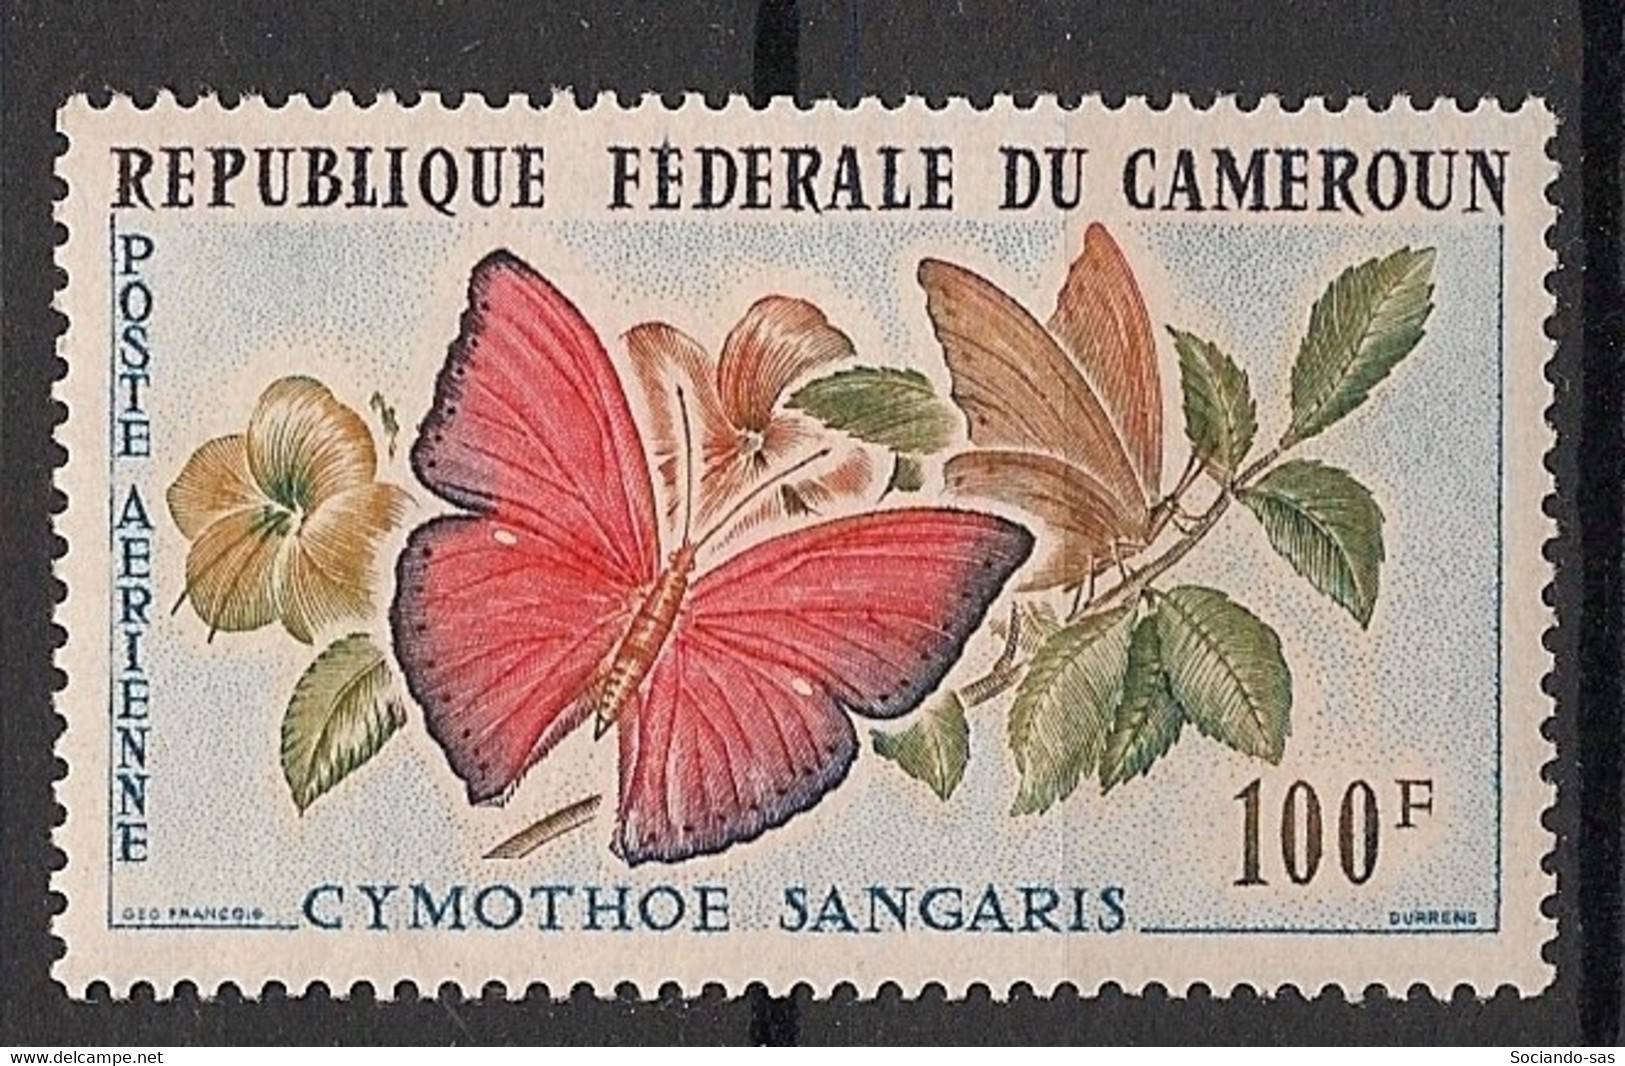 CAMEROUN - 1962 - Poste Aérienne PA  N° YT. 54 - Papillons / Butterflies - Neuf Luxe ** / MNH / Postfrisch - Papillons